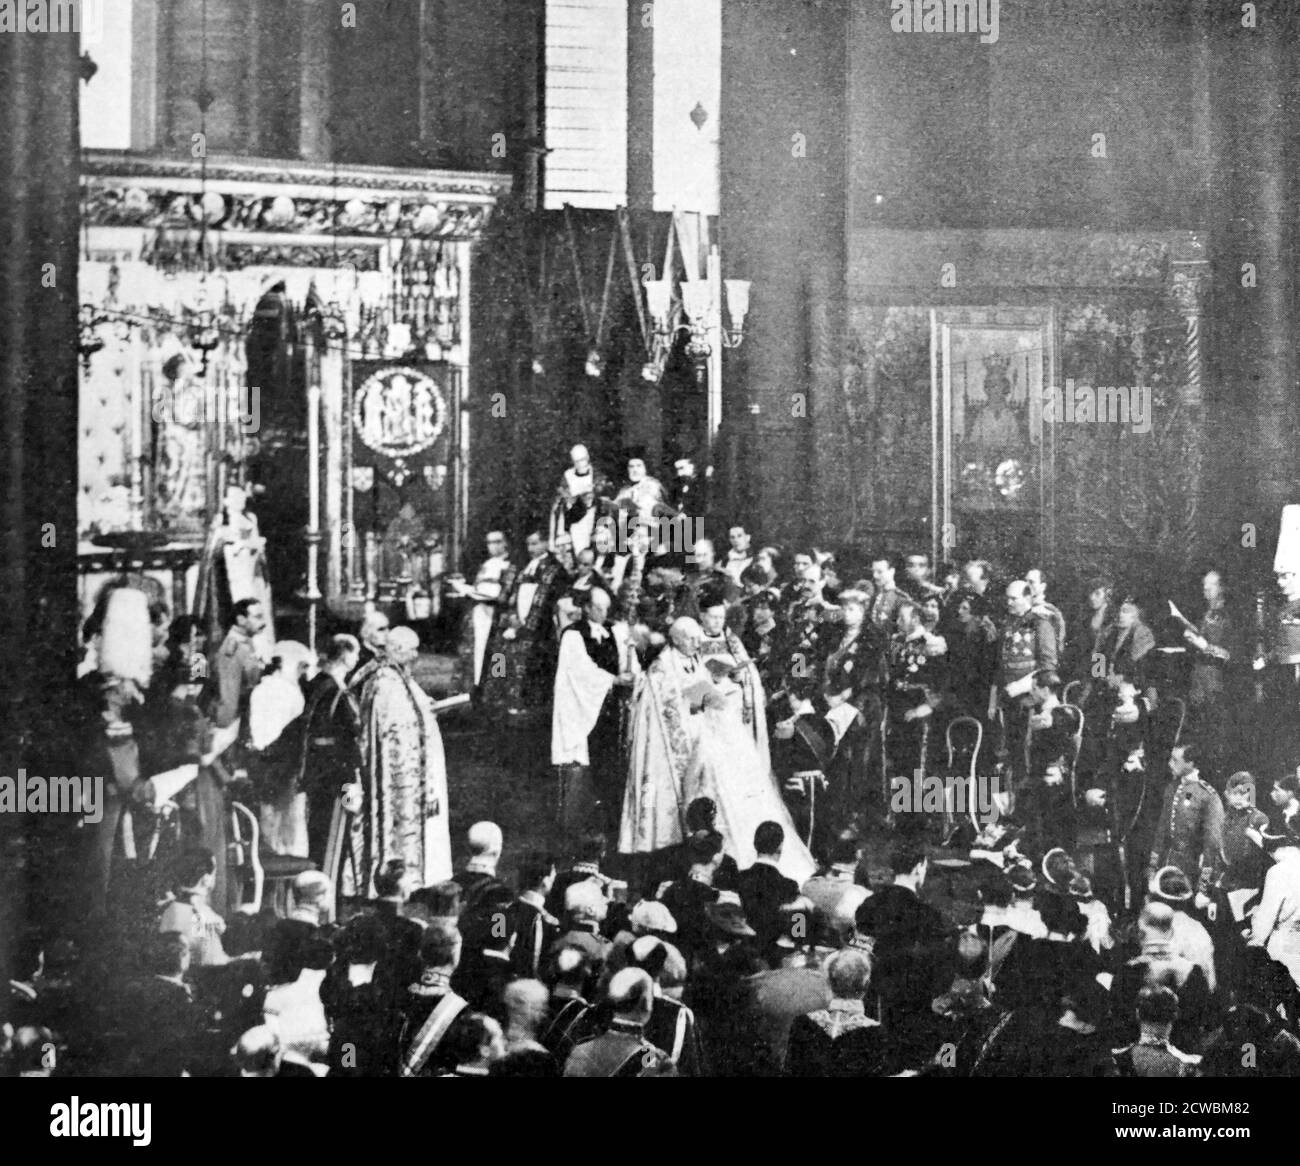 Foto en blanco y negro desde el interior de la Abadía de Westminster durante el matrimonio del príncipe Jorge, duque de Kent (1902-1942) y princesa Marina de Grecia (1906-1968); el matrimonio tuvo lugar el 29 de noviembre de 1934. Foto de stock